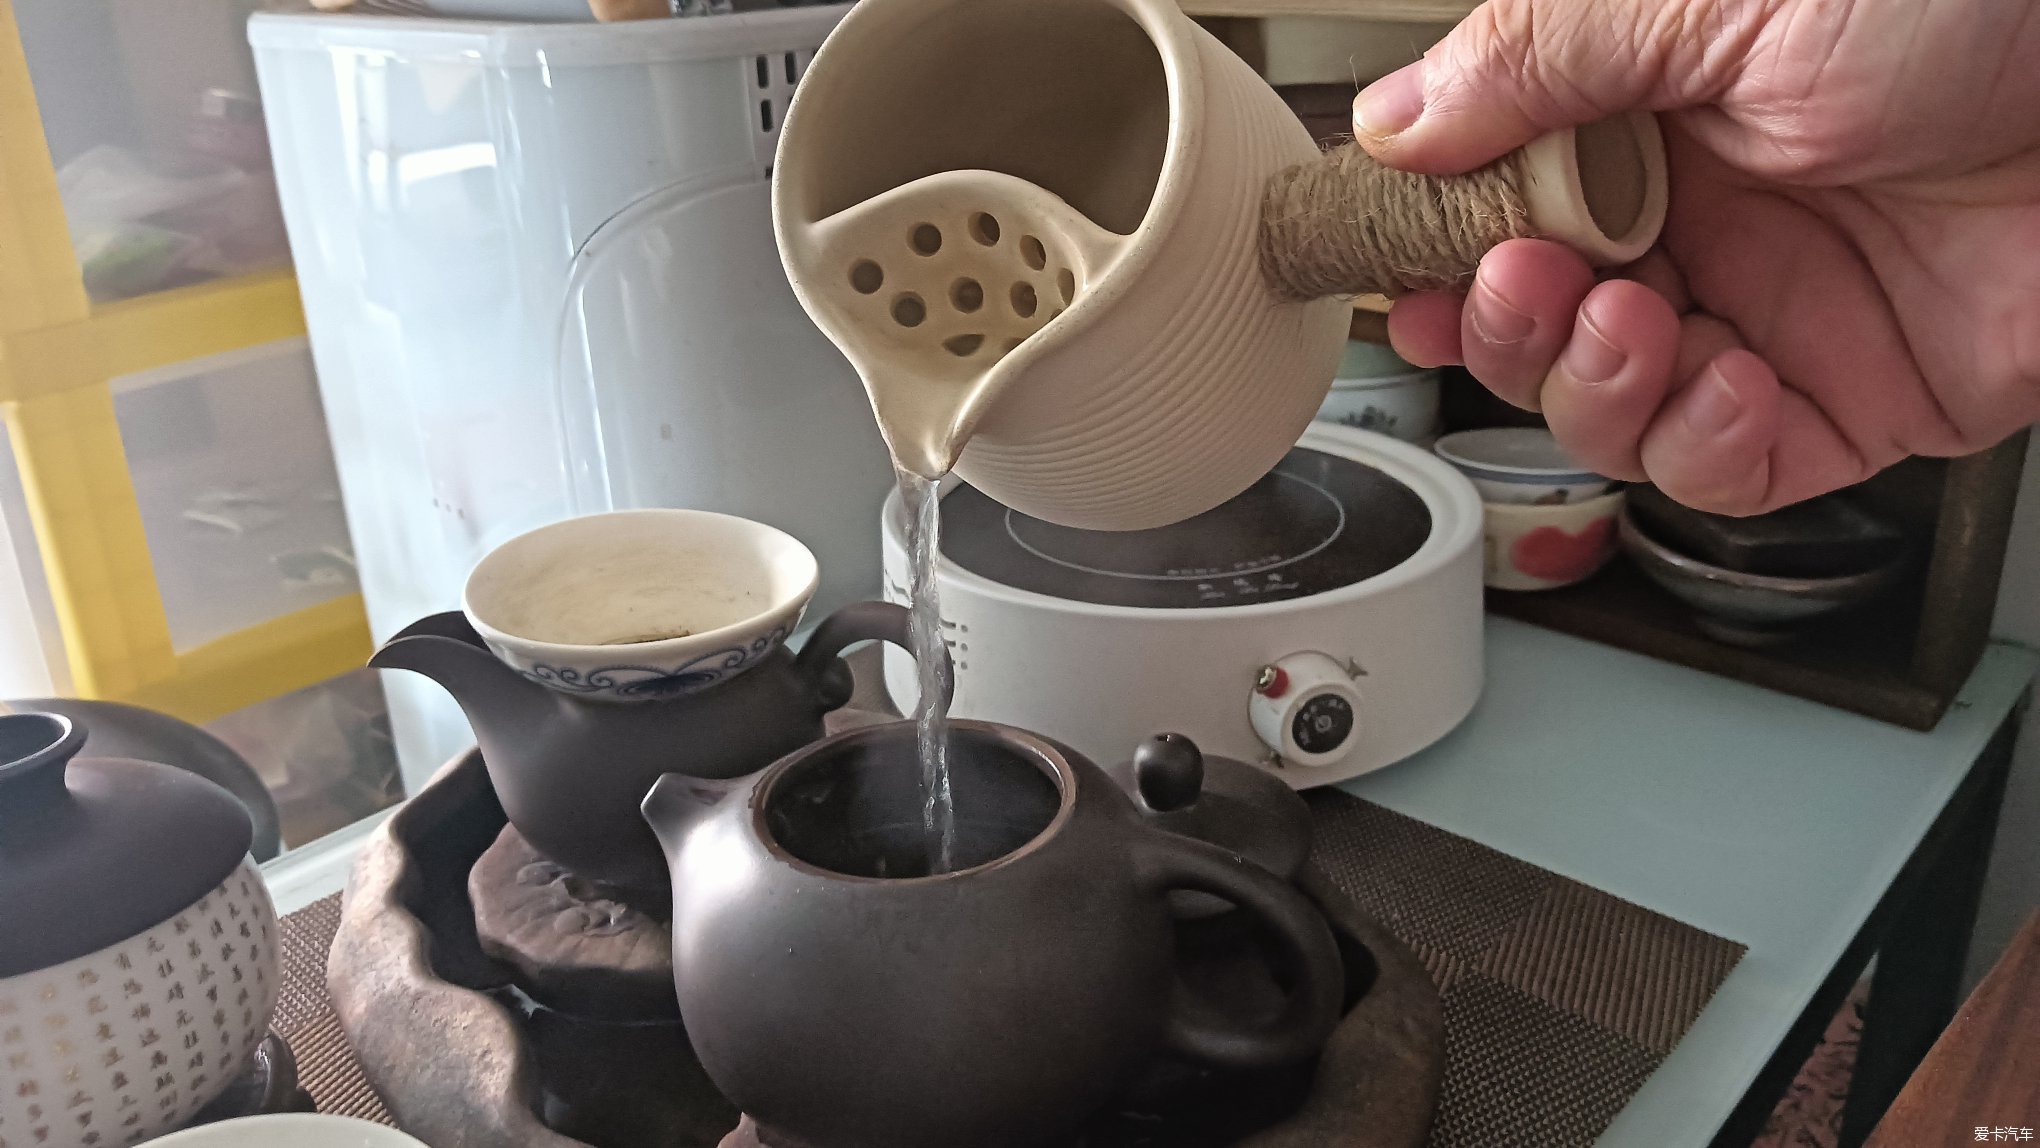 【比拼】每天早上的第一壶茶